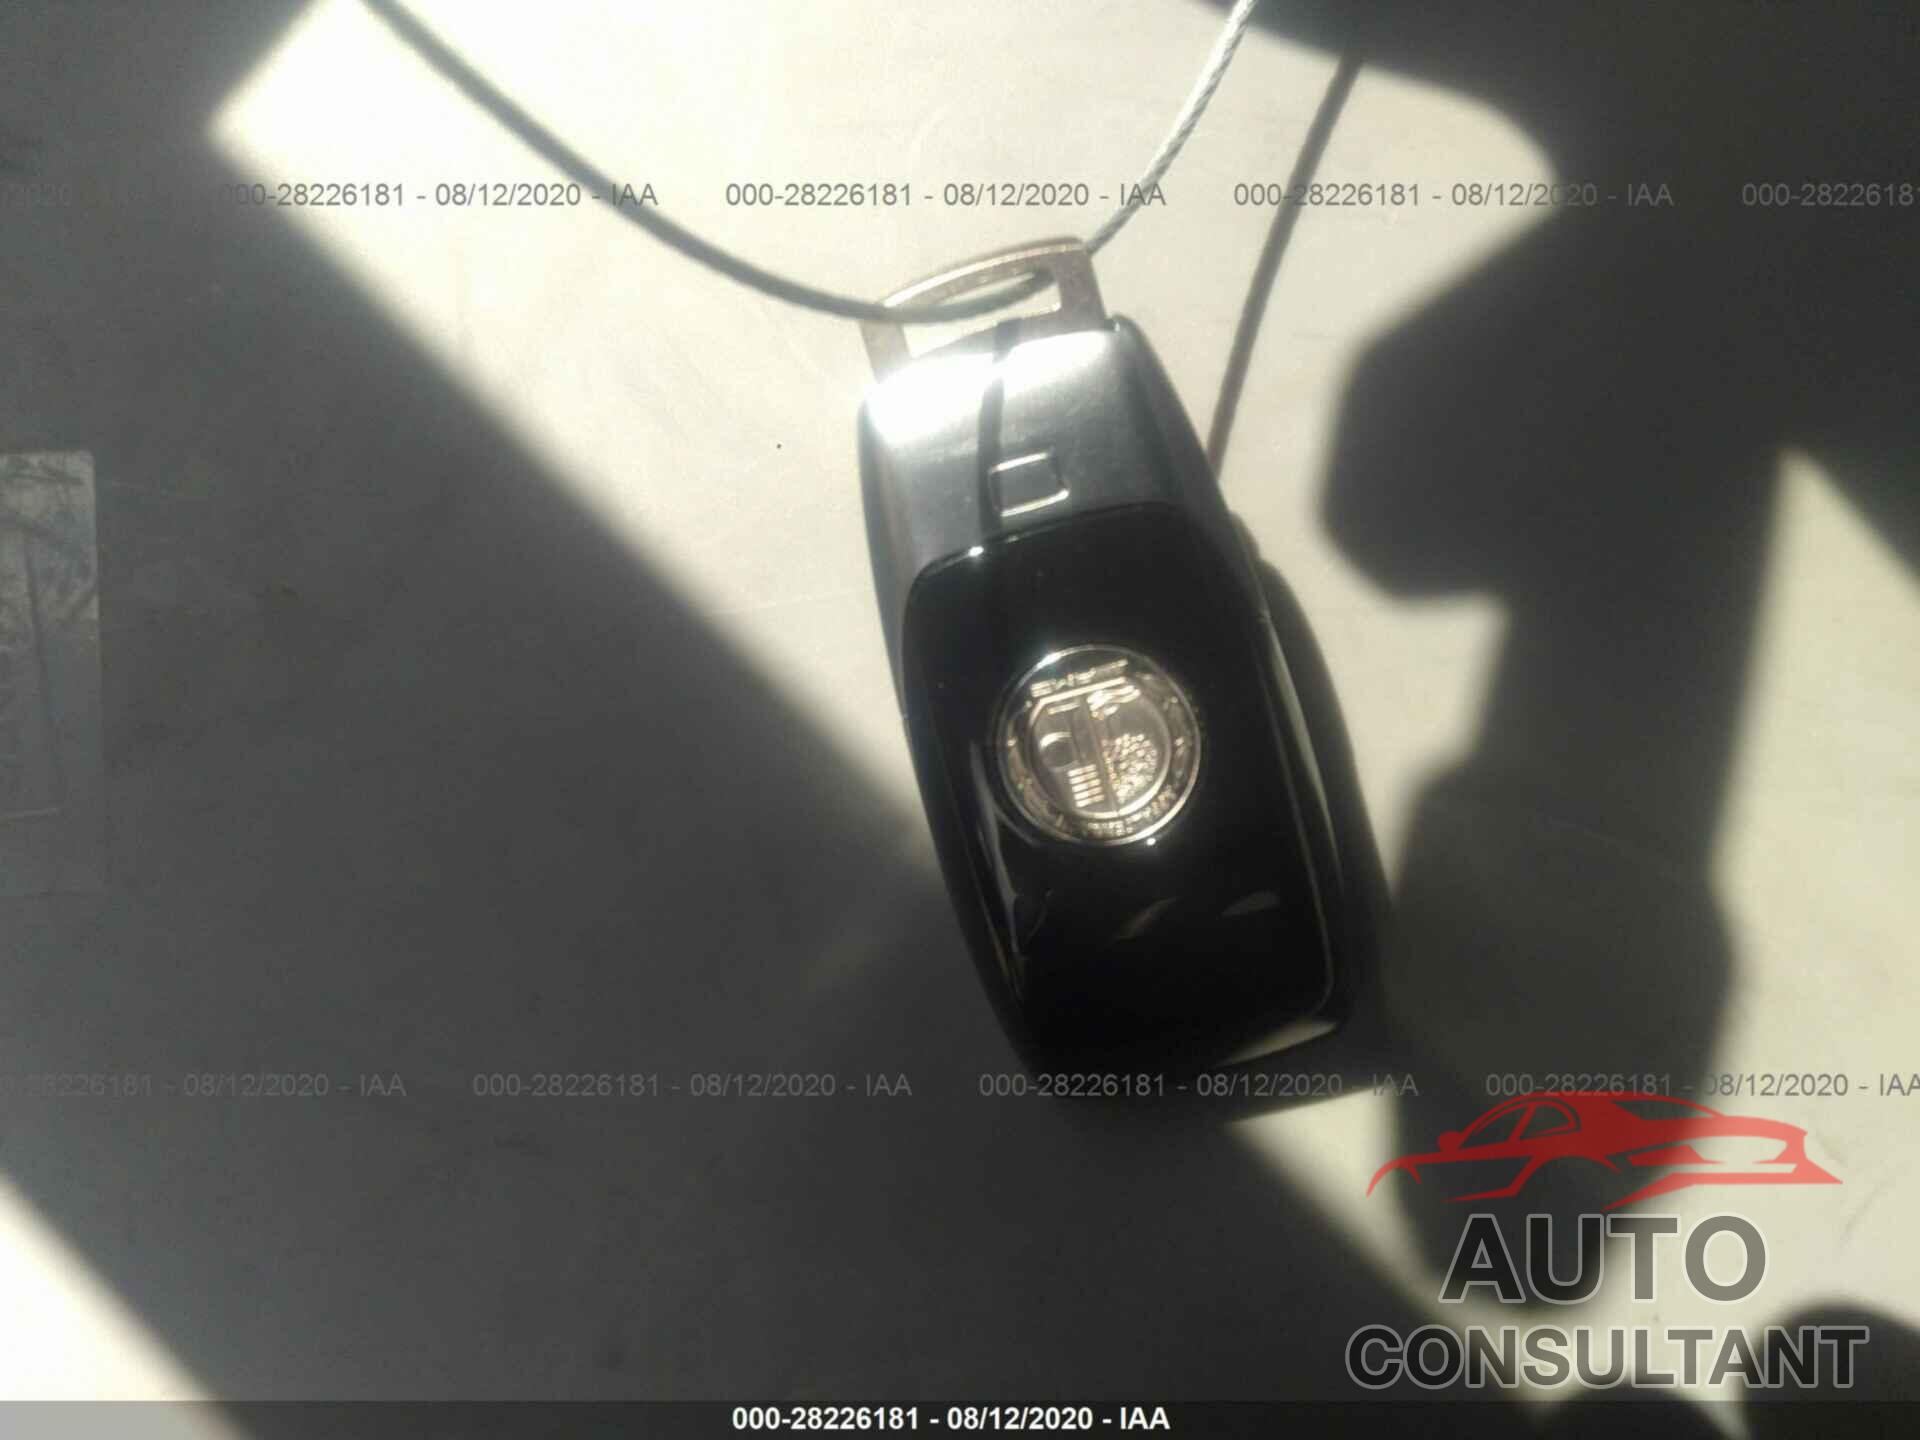 MERCEDES-BENZ AMG GT 2020 - W1K7X6BB7LA016566